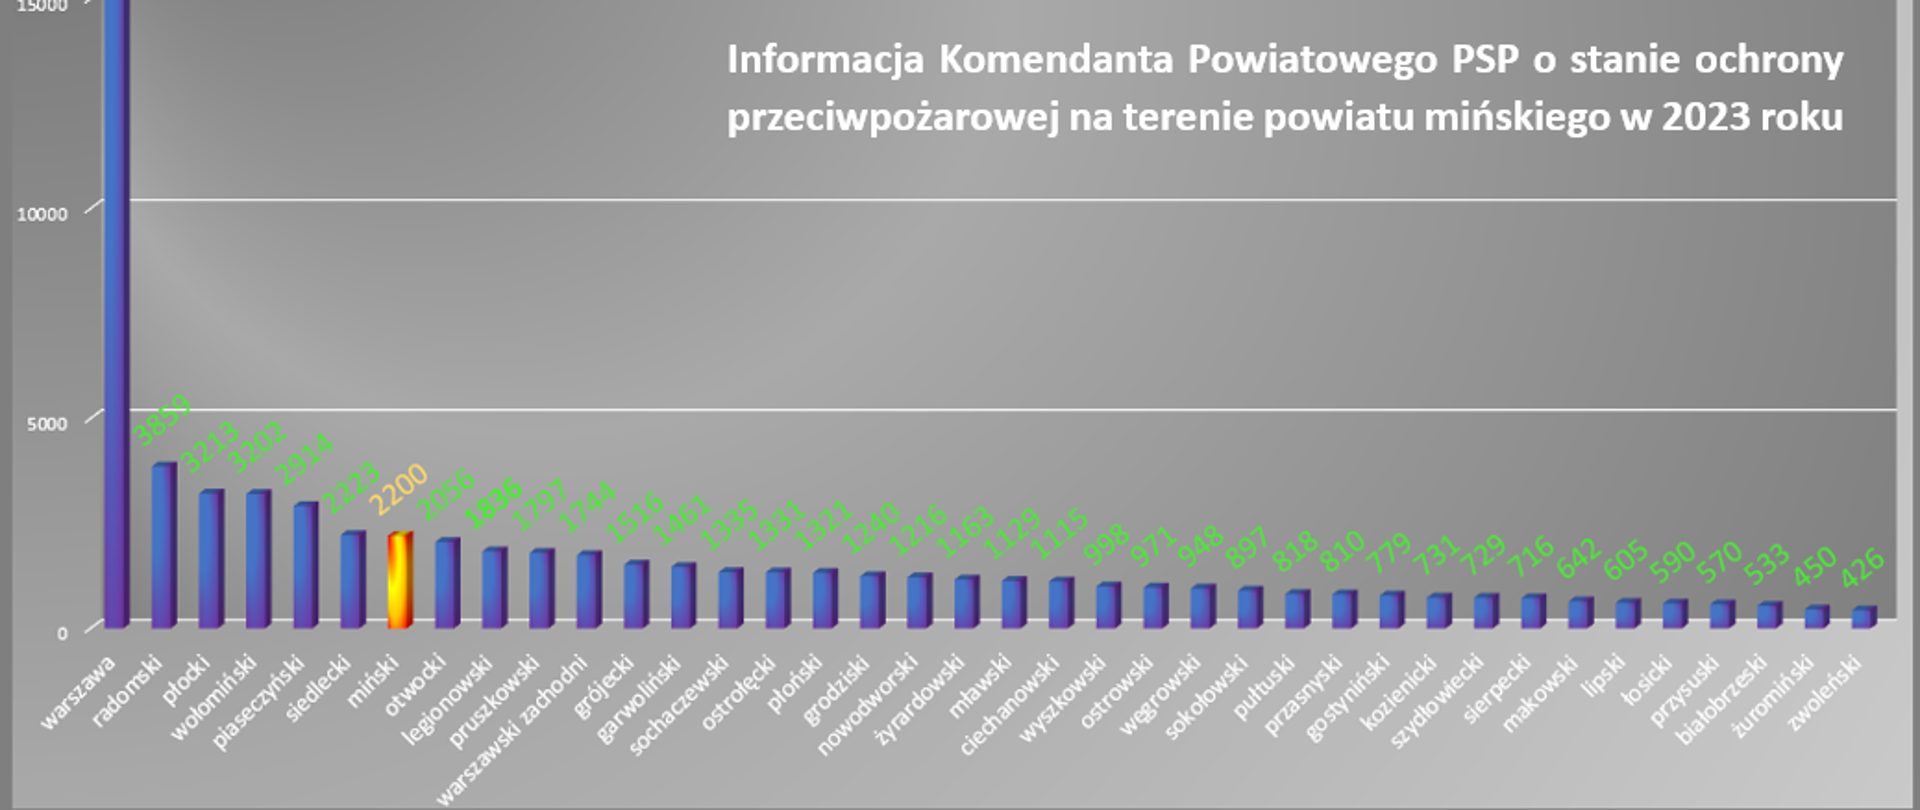 Statystyka wyjazdów jednostek ochrony przeciwpożarowej z powiatów województwa mazowieckiego w 2023 roku